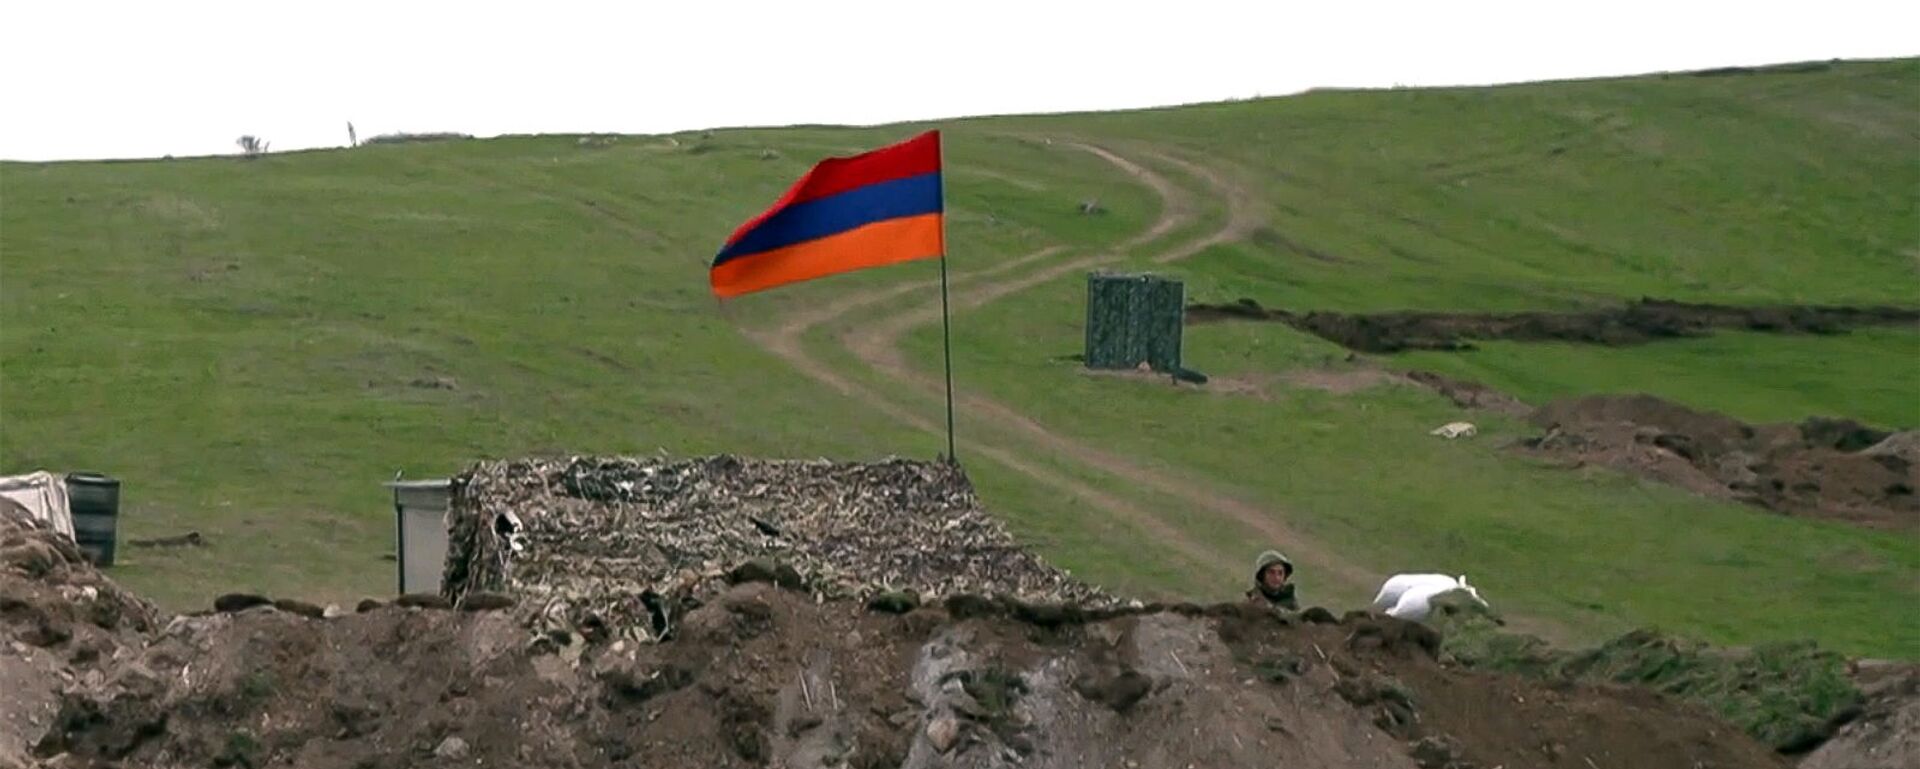 Армянский военнослужащий на армяно-азербайджанской границе - Sputnik Армения, 1920, 20.05.2021